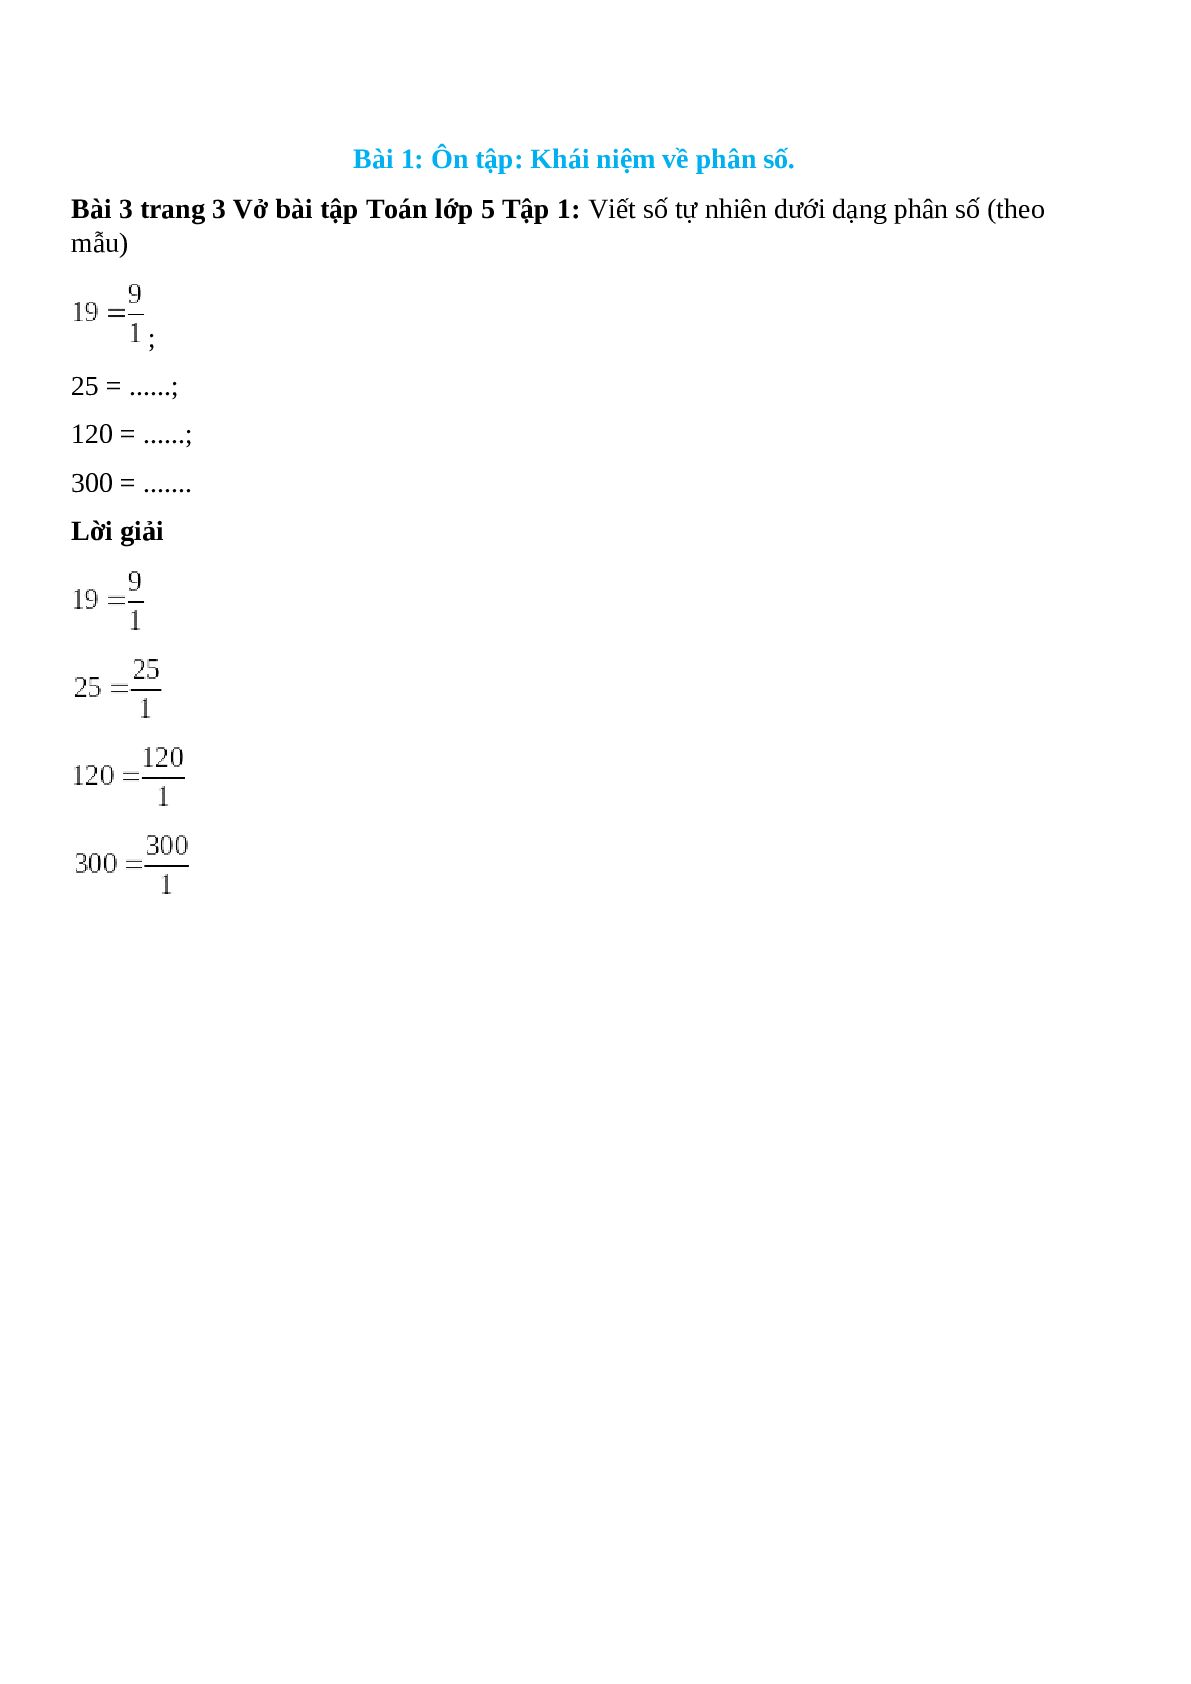 Viết số tự nhiên dưới dạng phân số (theo mẫu): 9 = 9/1 (trang 1)